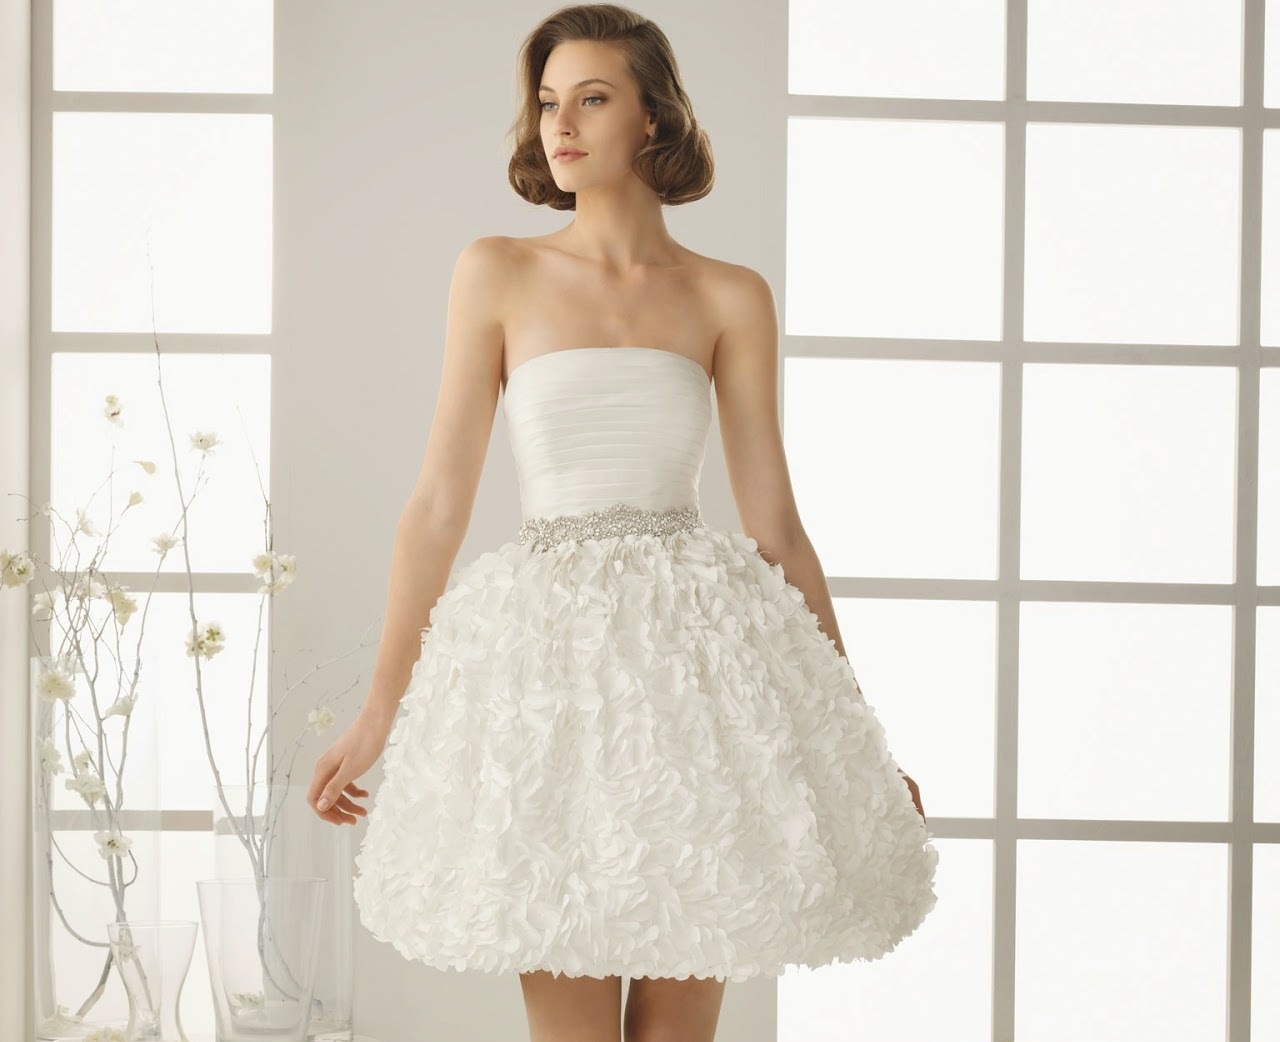 Gaun putih dengan rok yang indah